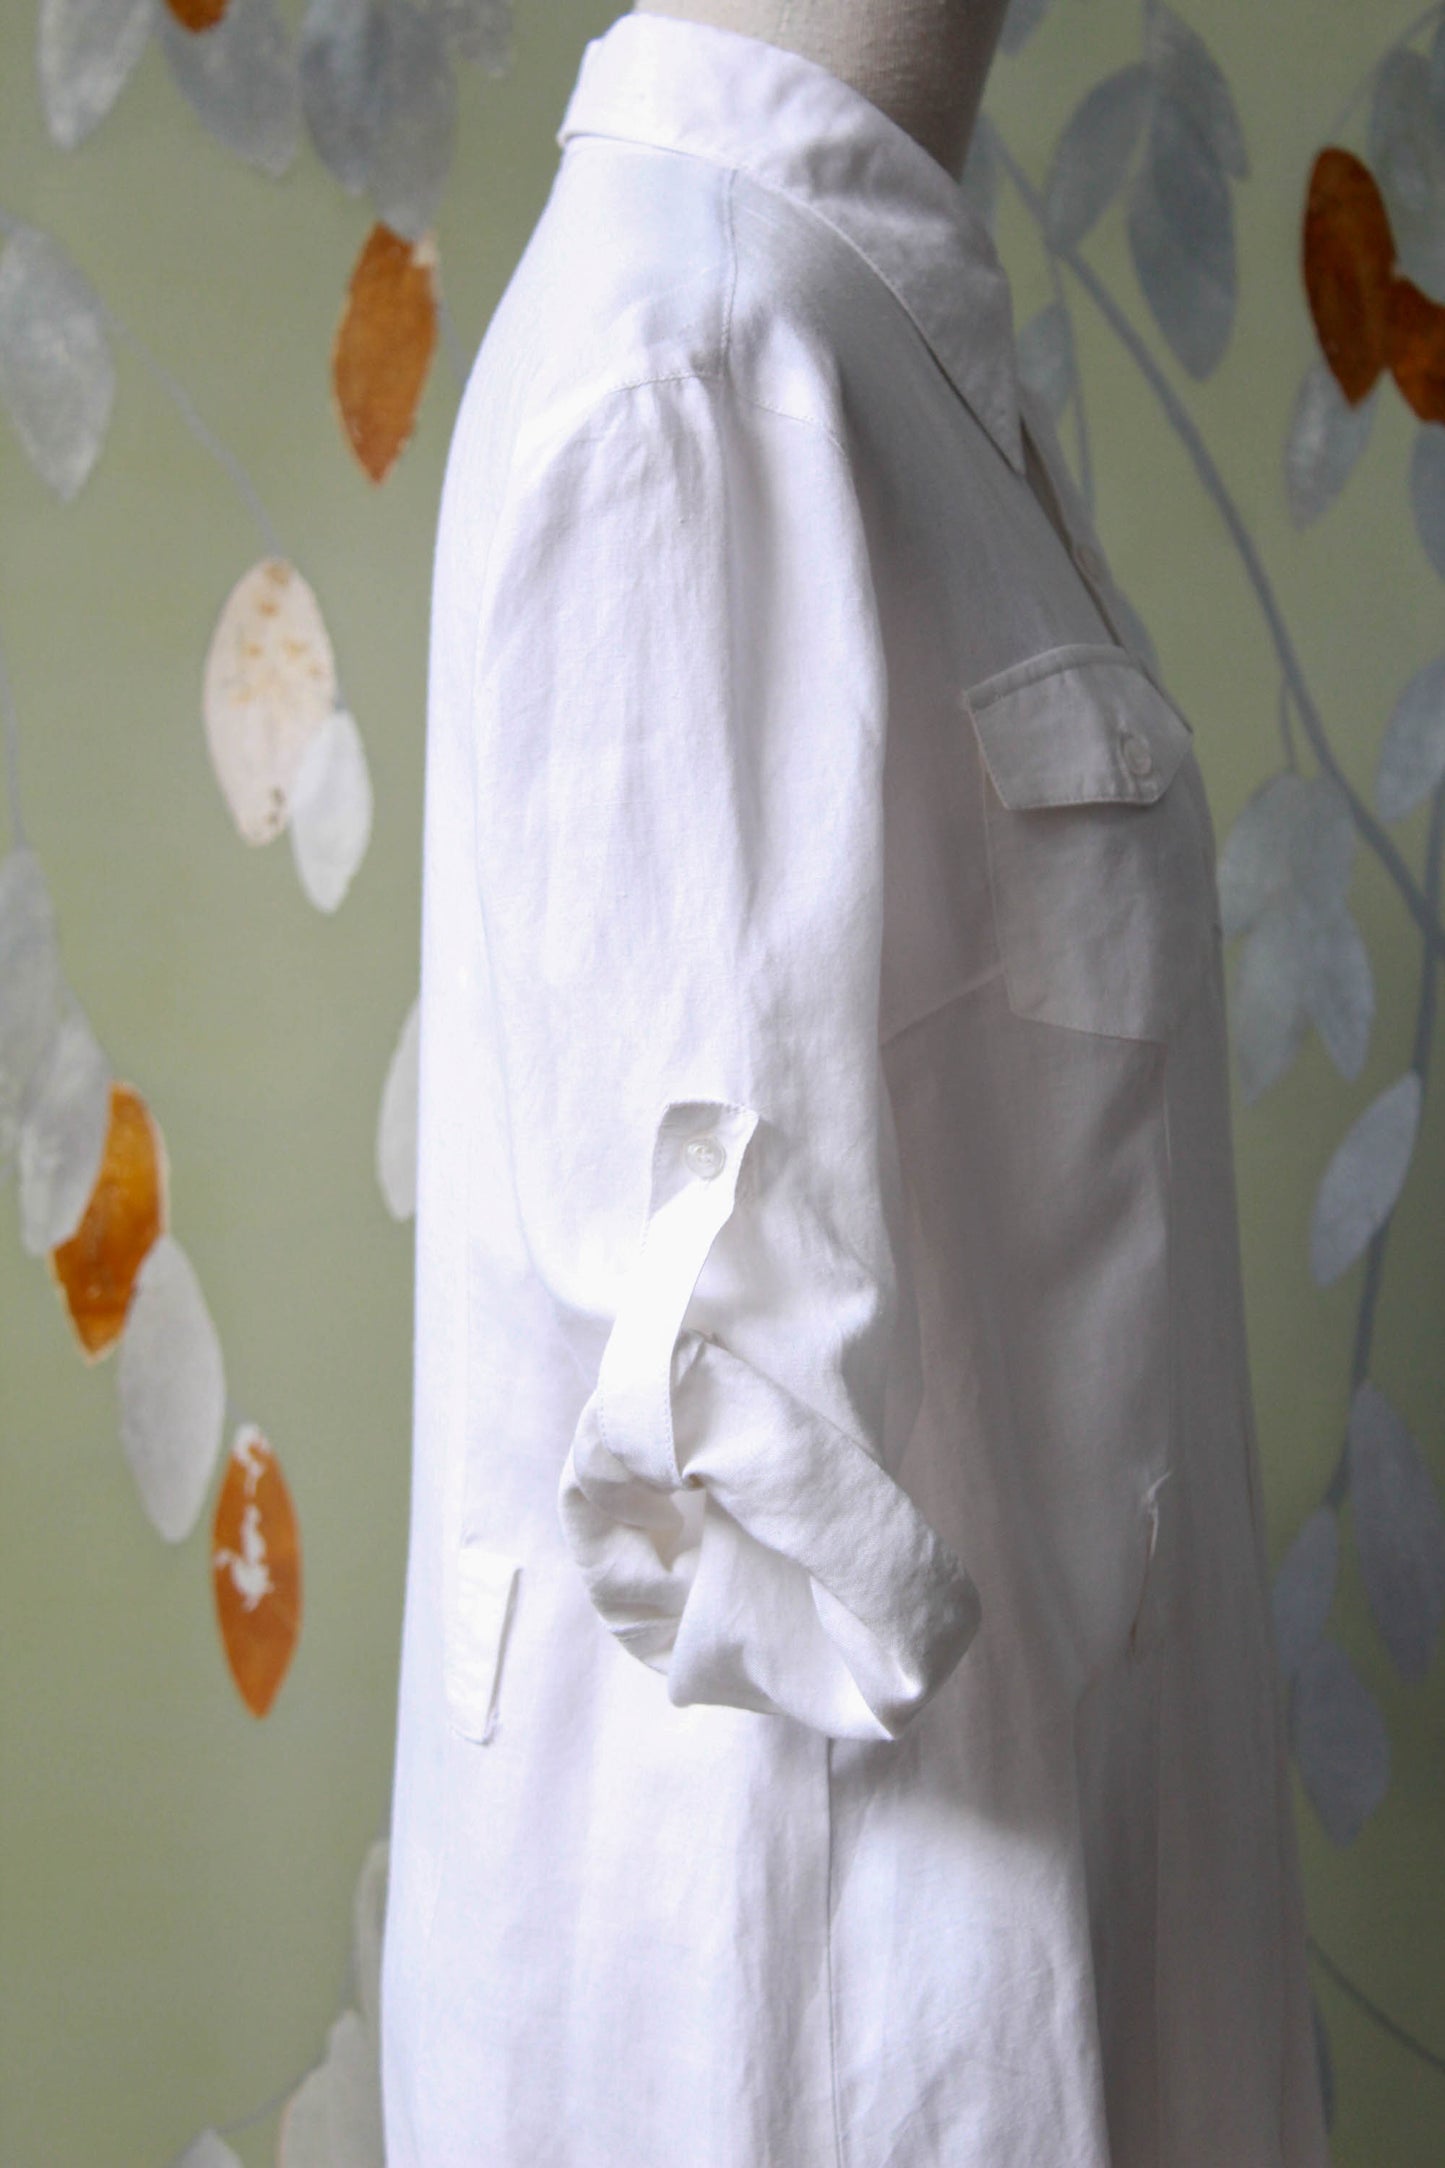 White Collared Shirt Dress, Medium